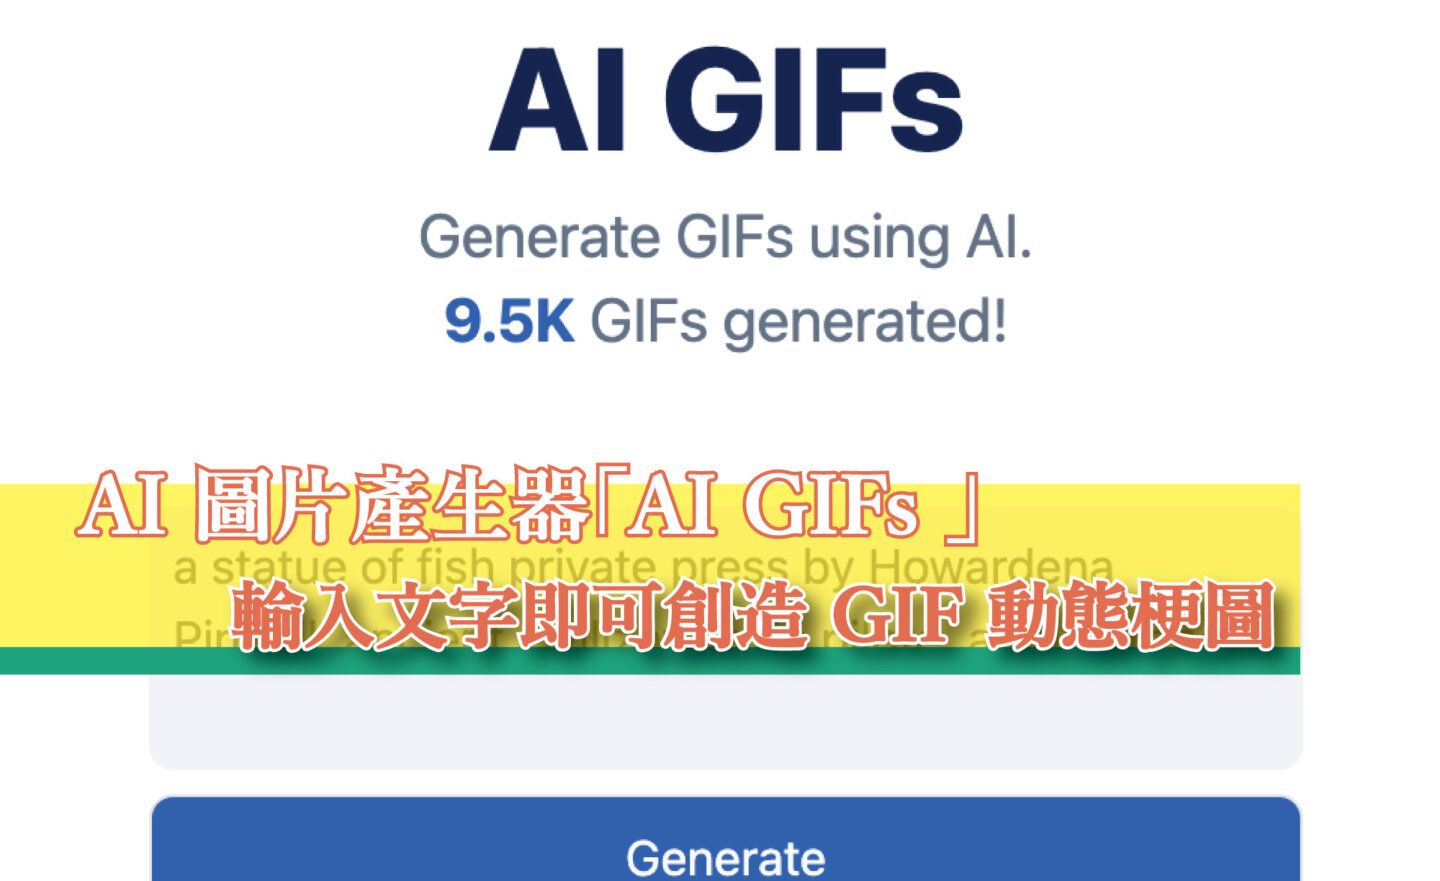 【免費】AI 圖片產生器「AI GIFs 」，輸入文字即可創造 GIF 動態梗圖